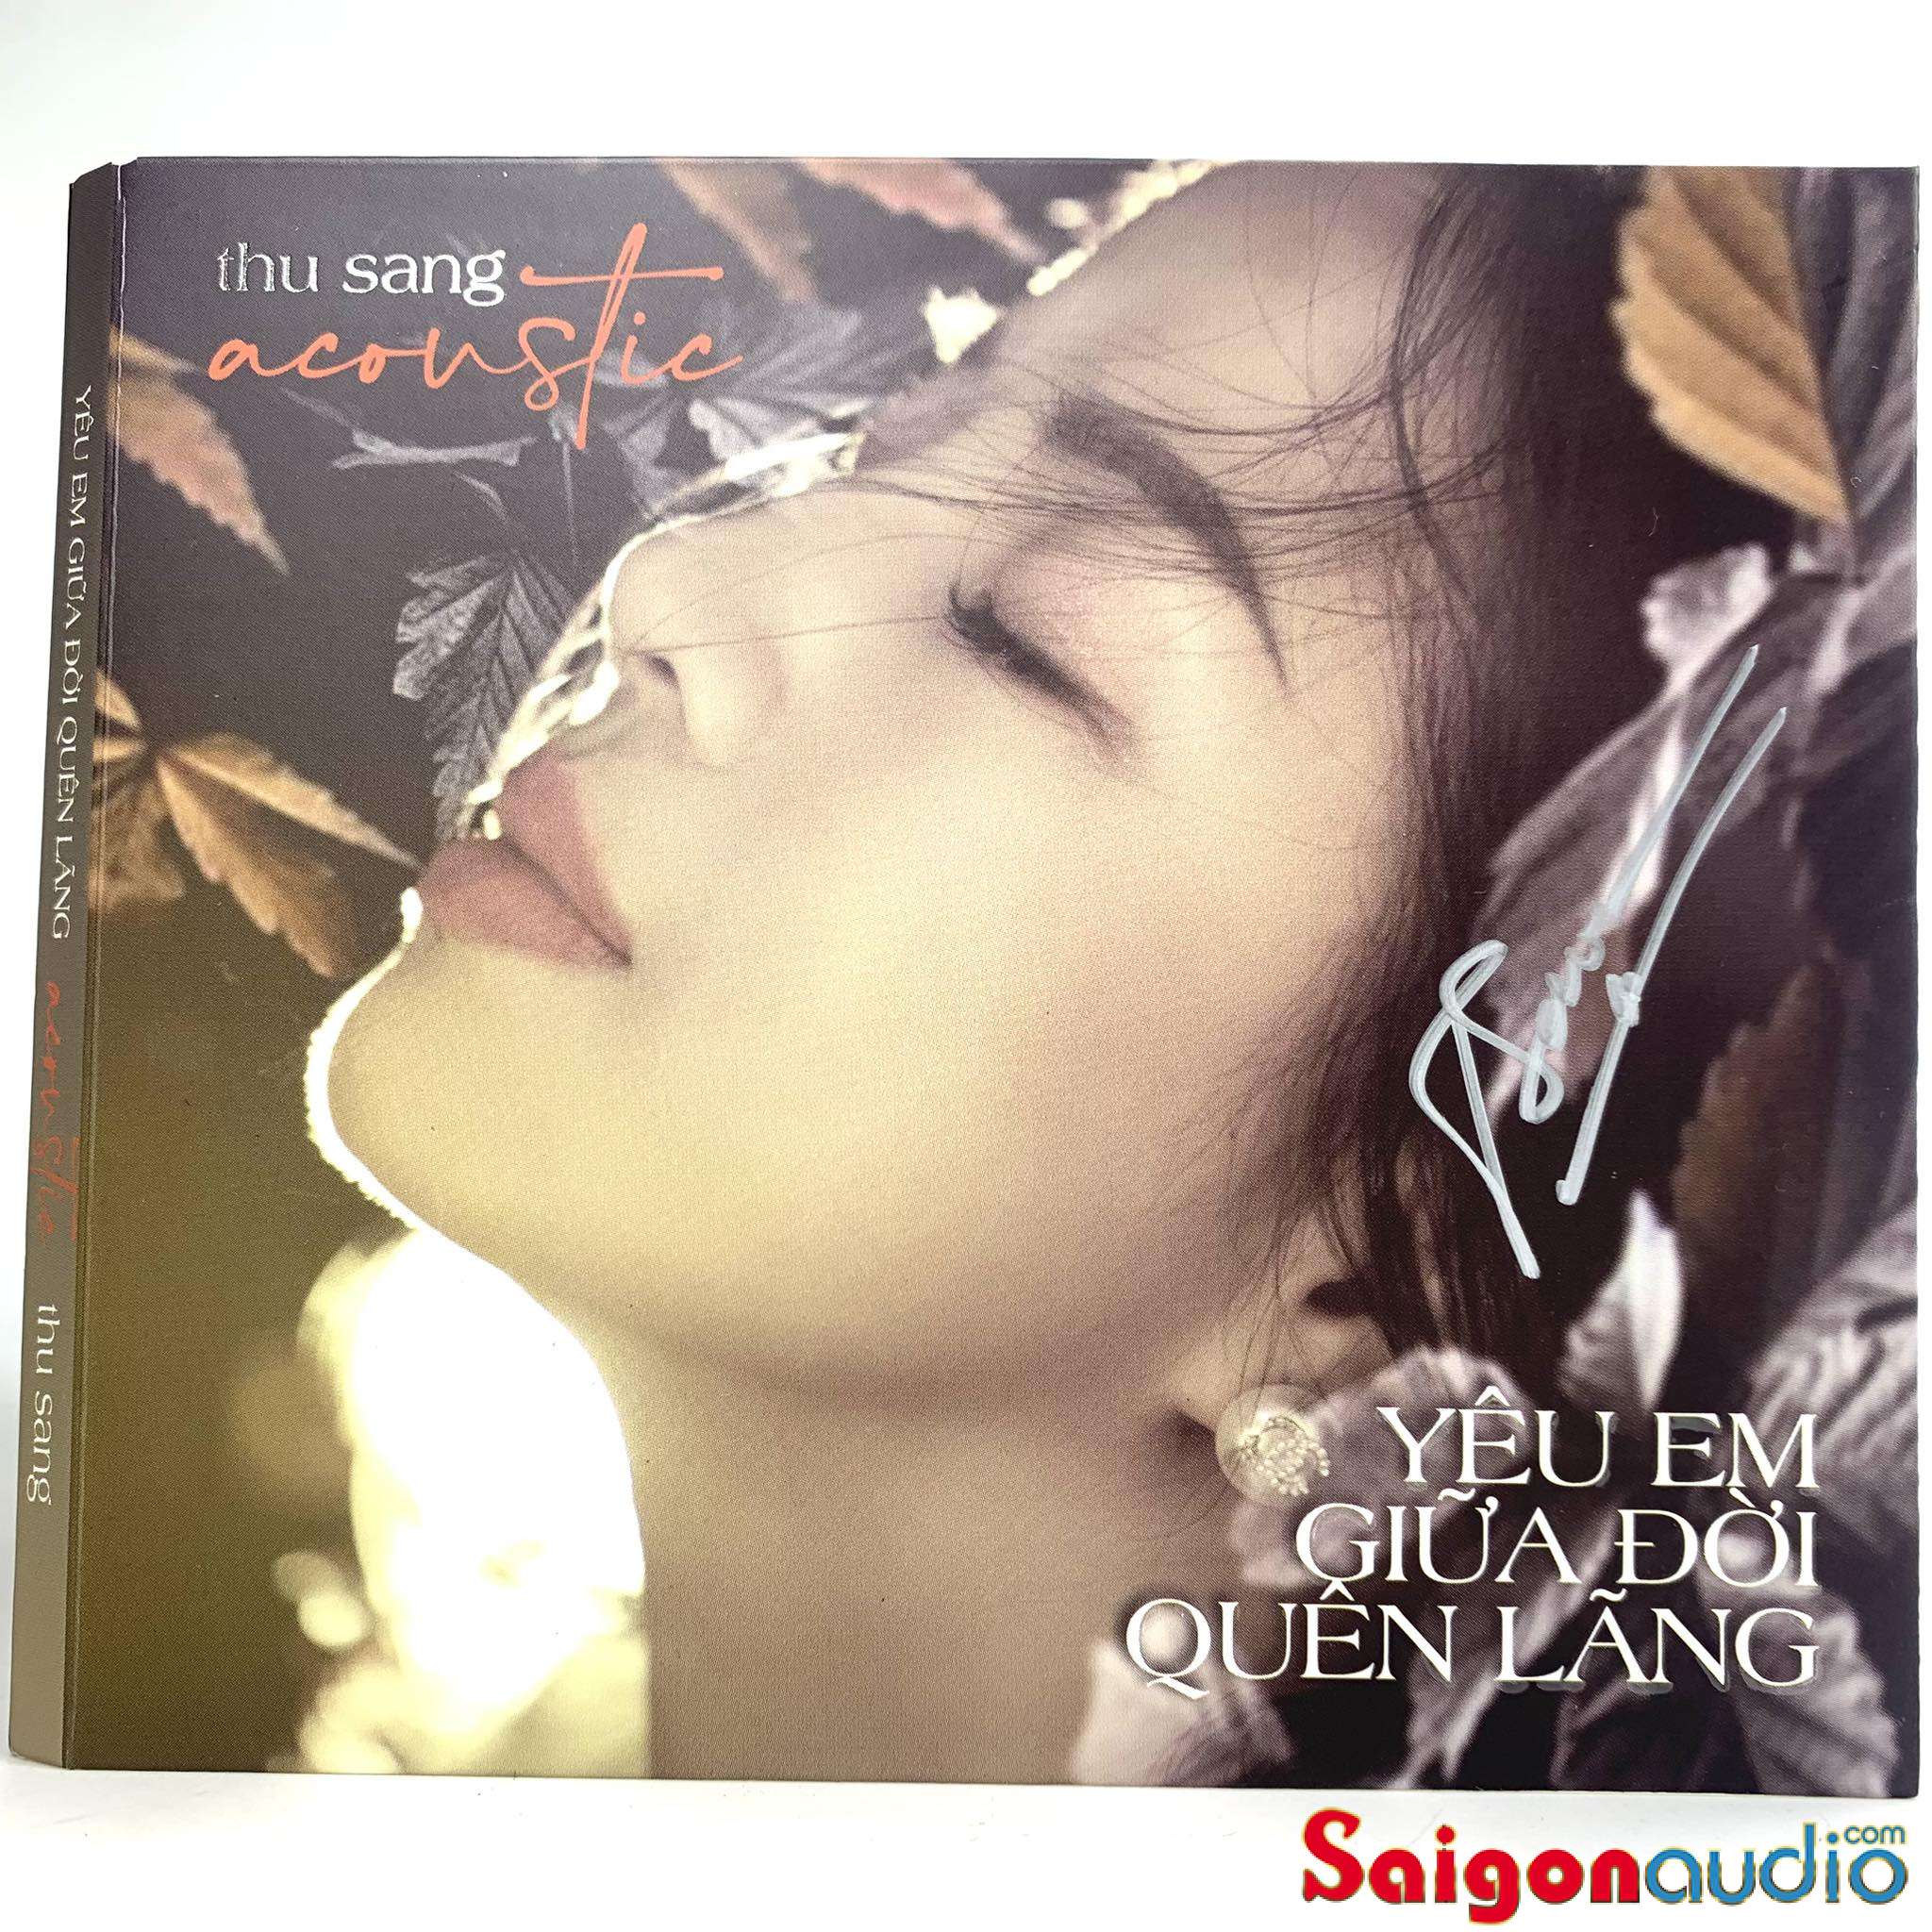 Đĩa CD gốc Thu Sang Acoustic - Yêu Em Giữa Đời Quên Lãng (Free ship khi mua 2 đĩa CD cùng hoặc khác loại)